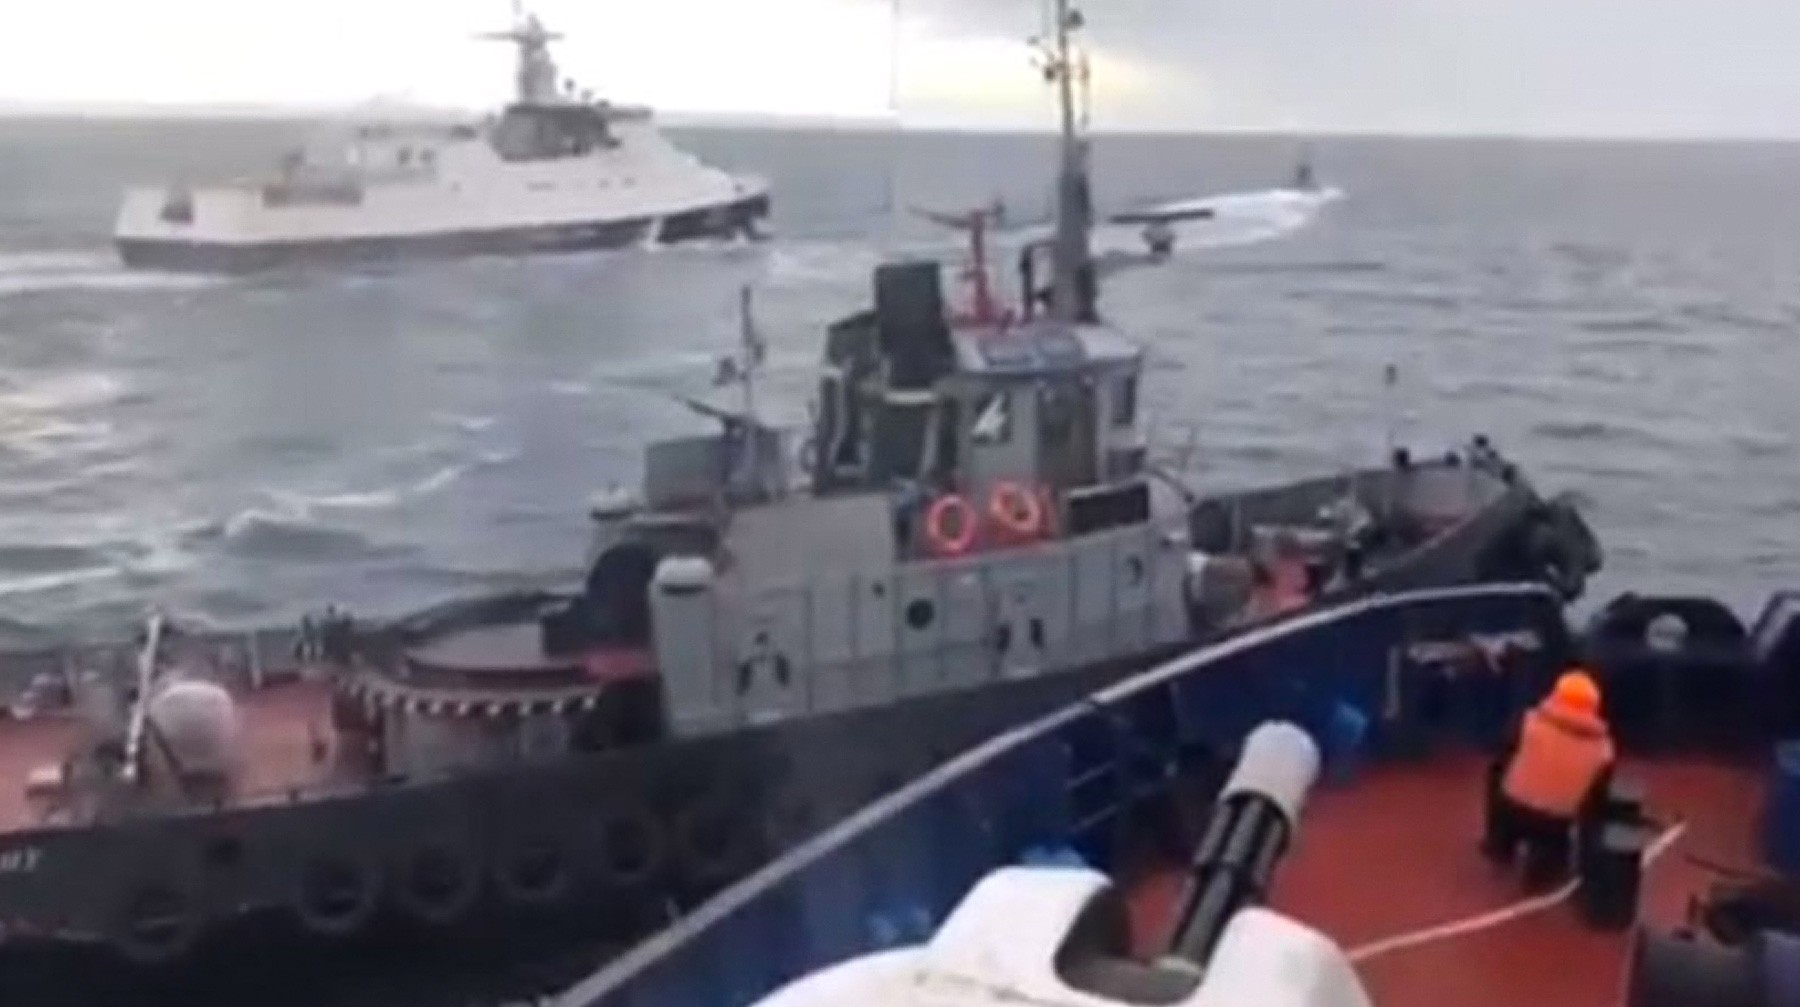 Dailystorm - Еще один украинский моряк, задержанный в Керченском проливе, отказался давать показания